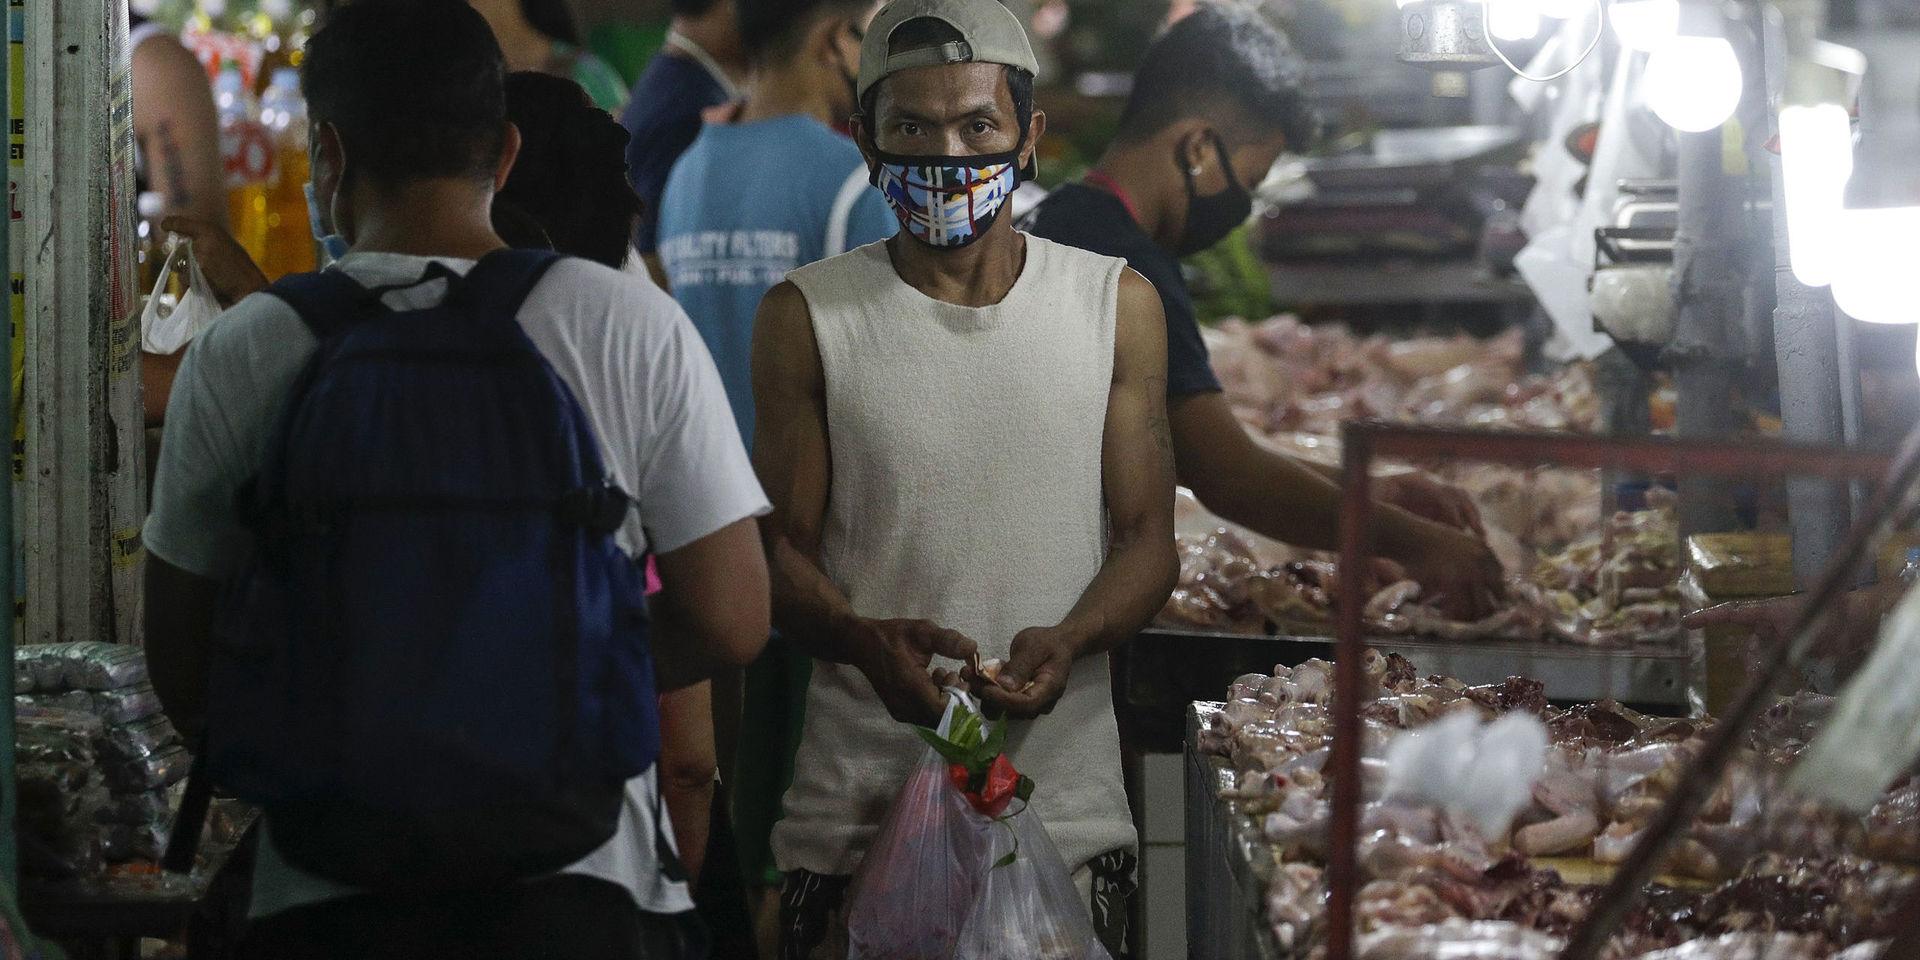 En man bär ansiktsmask på marknaden. Megastäder som filippinska Manila, där människor bor tätt och fattigdomen är utbredd, är en tacksam grogrund för smittspridning. 